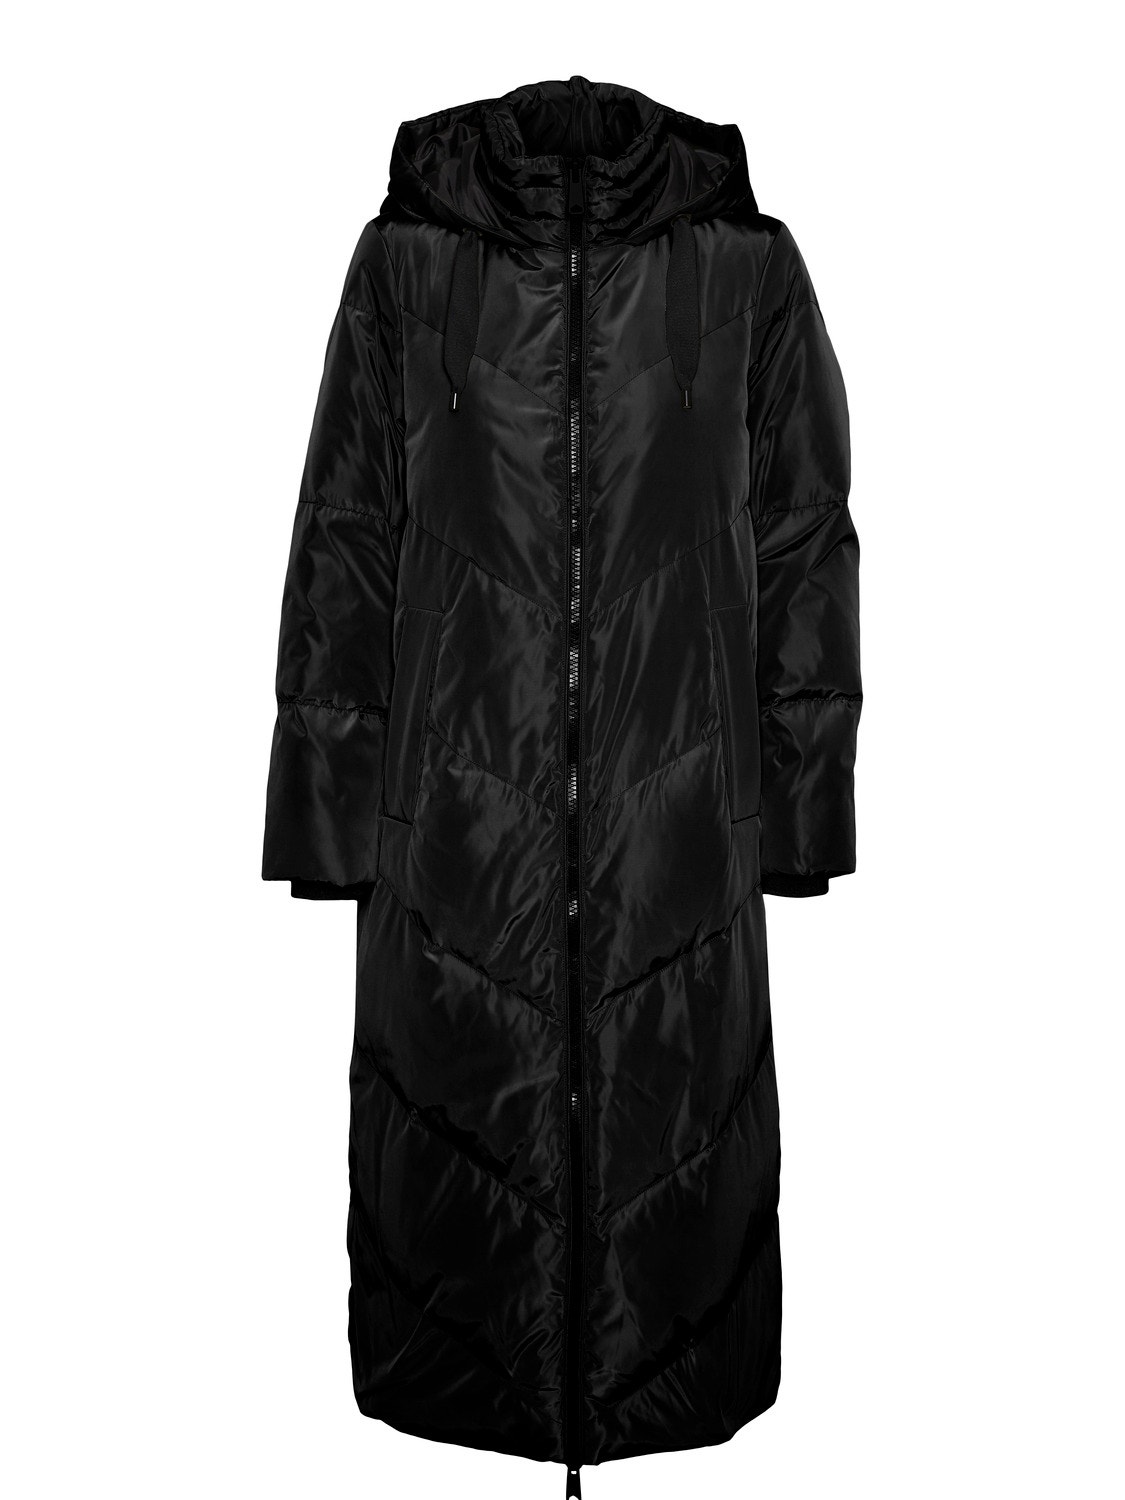 VMLEE Coat with 50% discount! | Vero Moda®